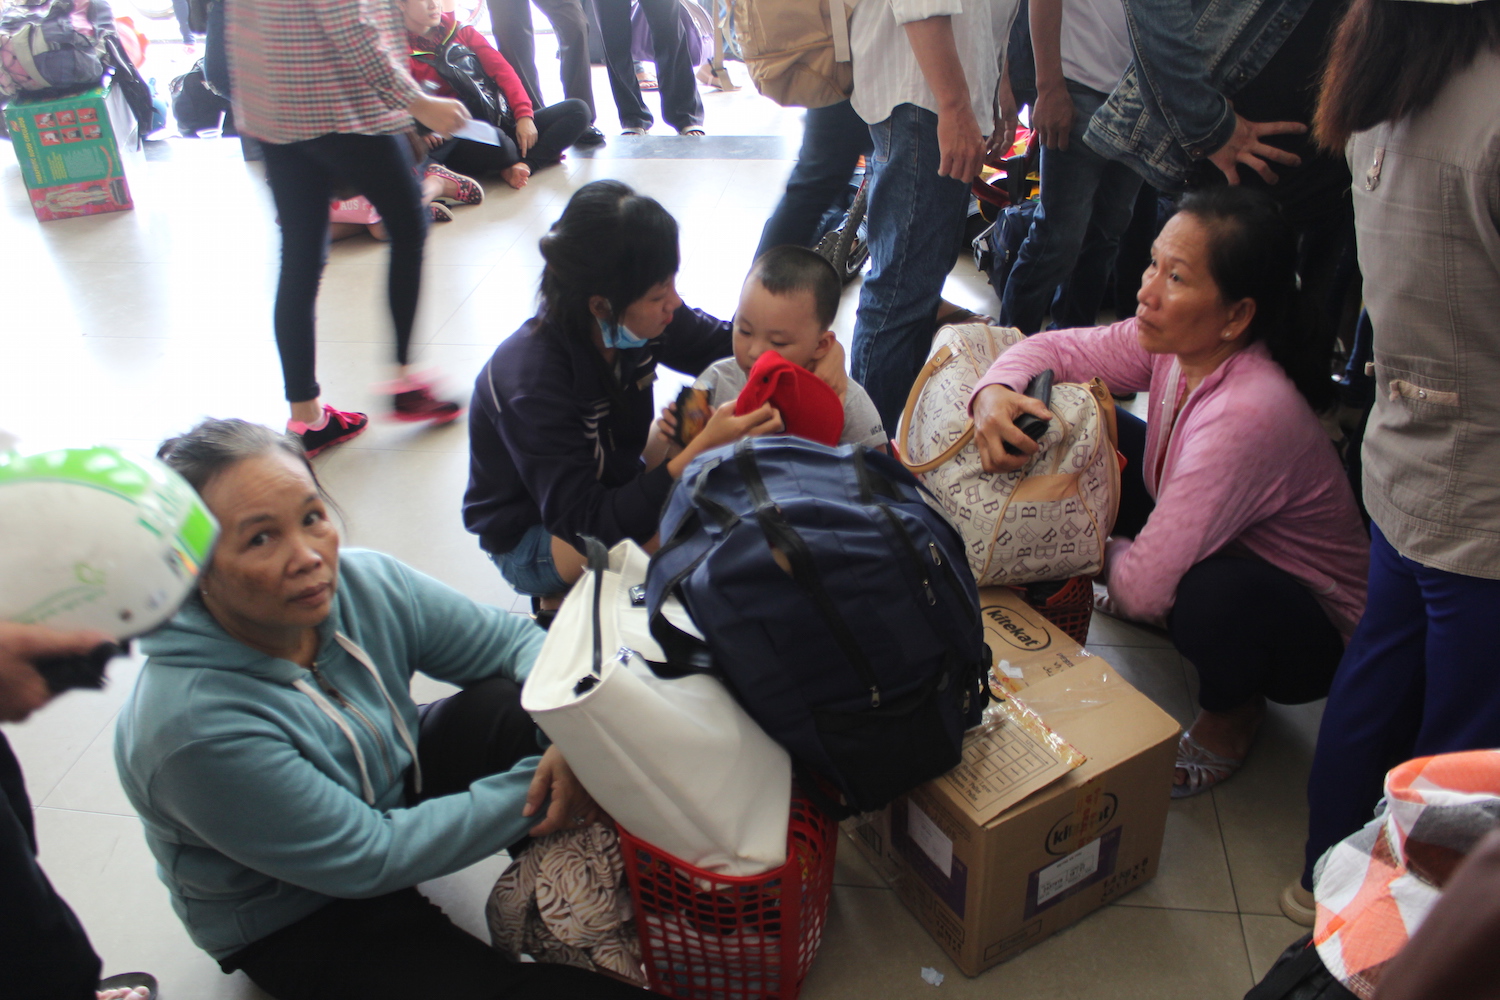 Bà Nguyễn Thị Mười (58 tuổi, quê Đồng Tháp) cho biết, bà đến bến xe cùng nhiều người trong nhà từ lúc 8 giờ 30, nhưng đến 11 giờ 30 bà vẫn chưa mua được vé đành phải ngồi chờ